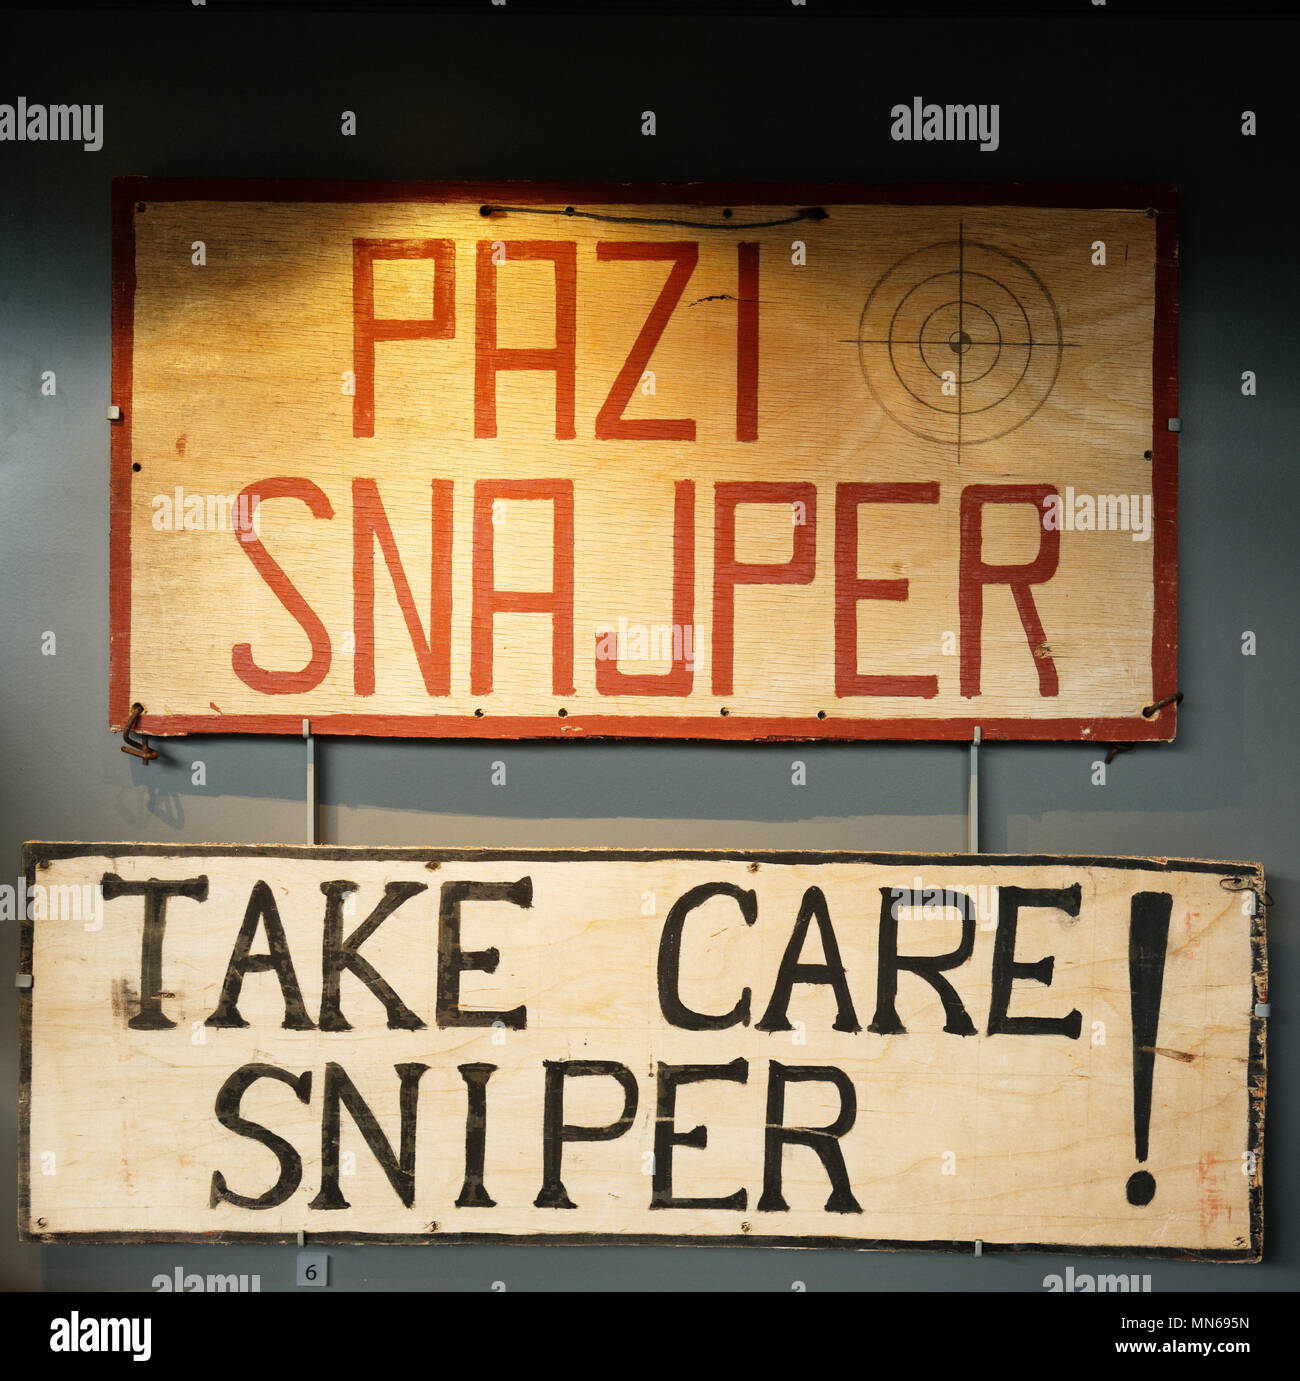 Ein "Care-Sniper' Zeichen von Sniper Alley in Sarajewo während des bosnischen Kriege Stockfoto